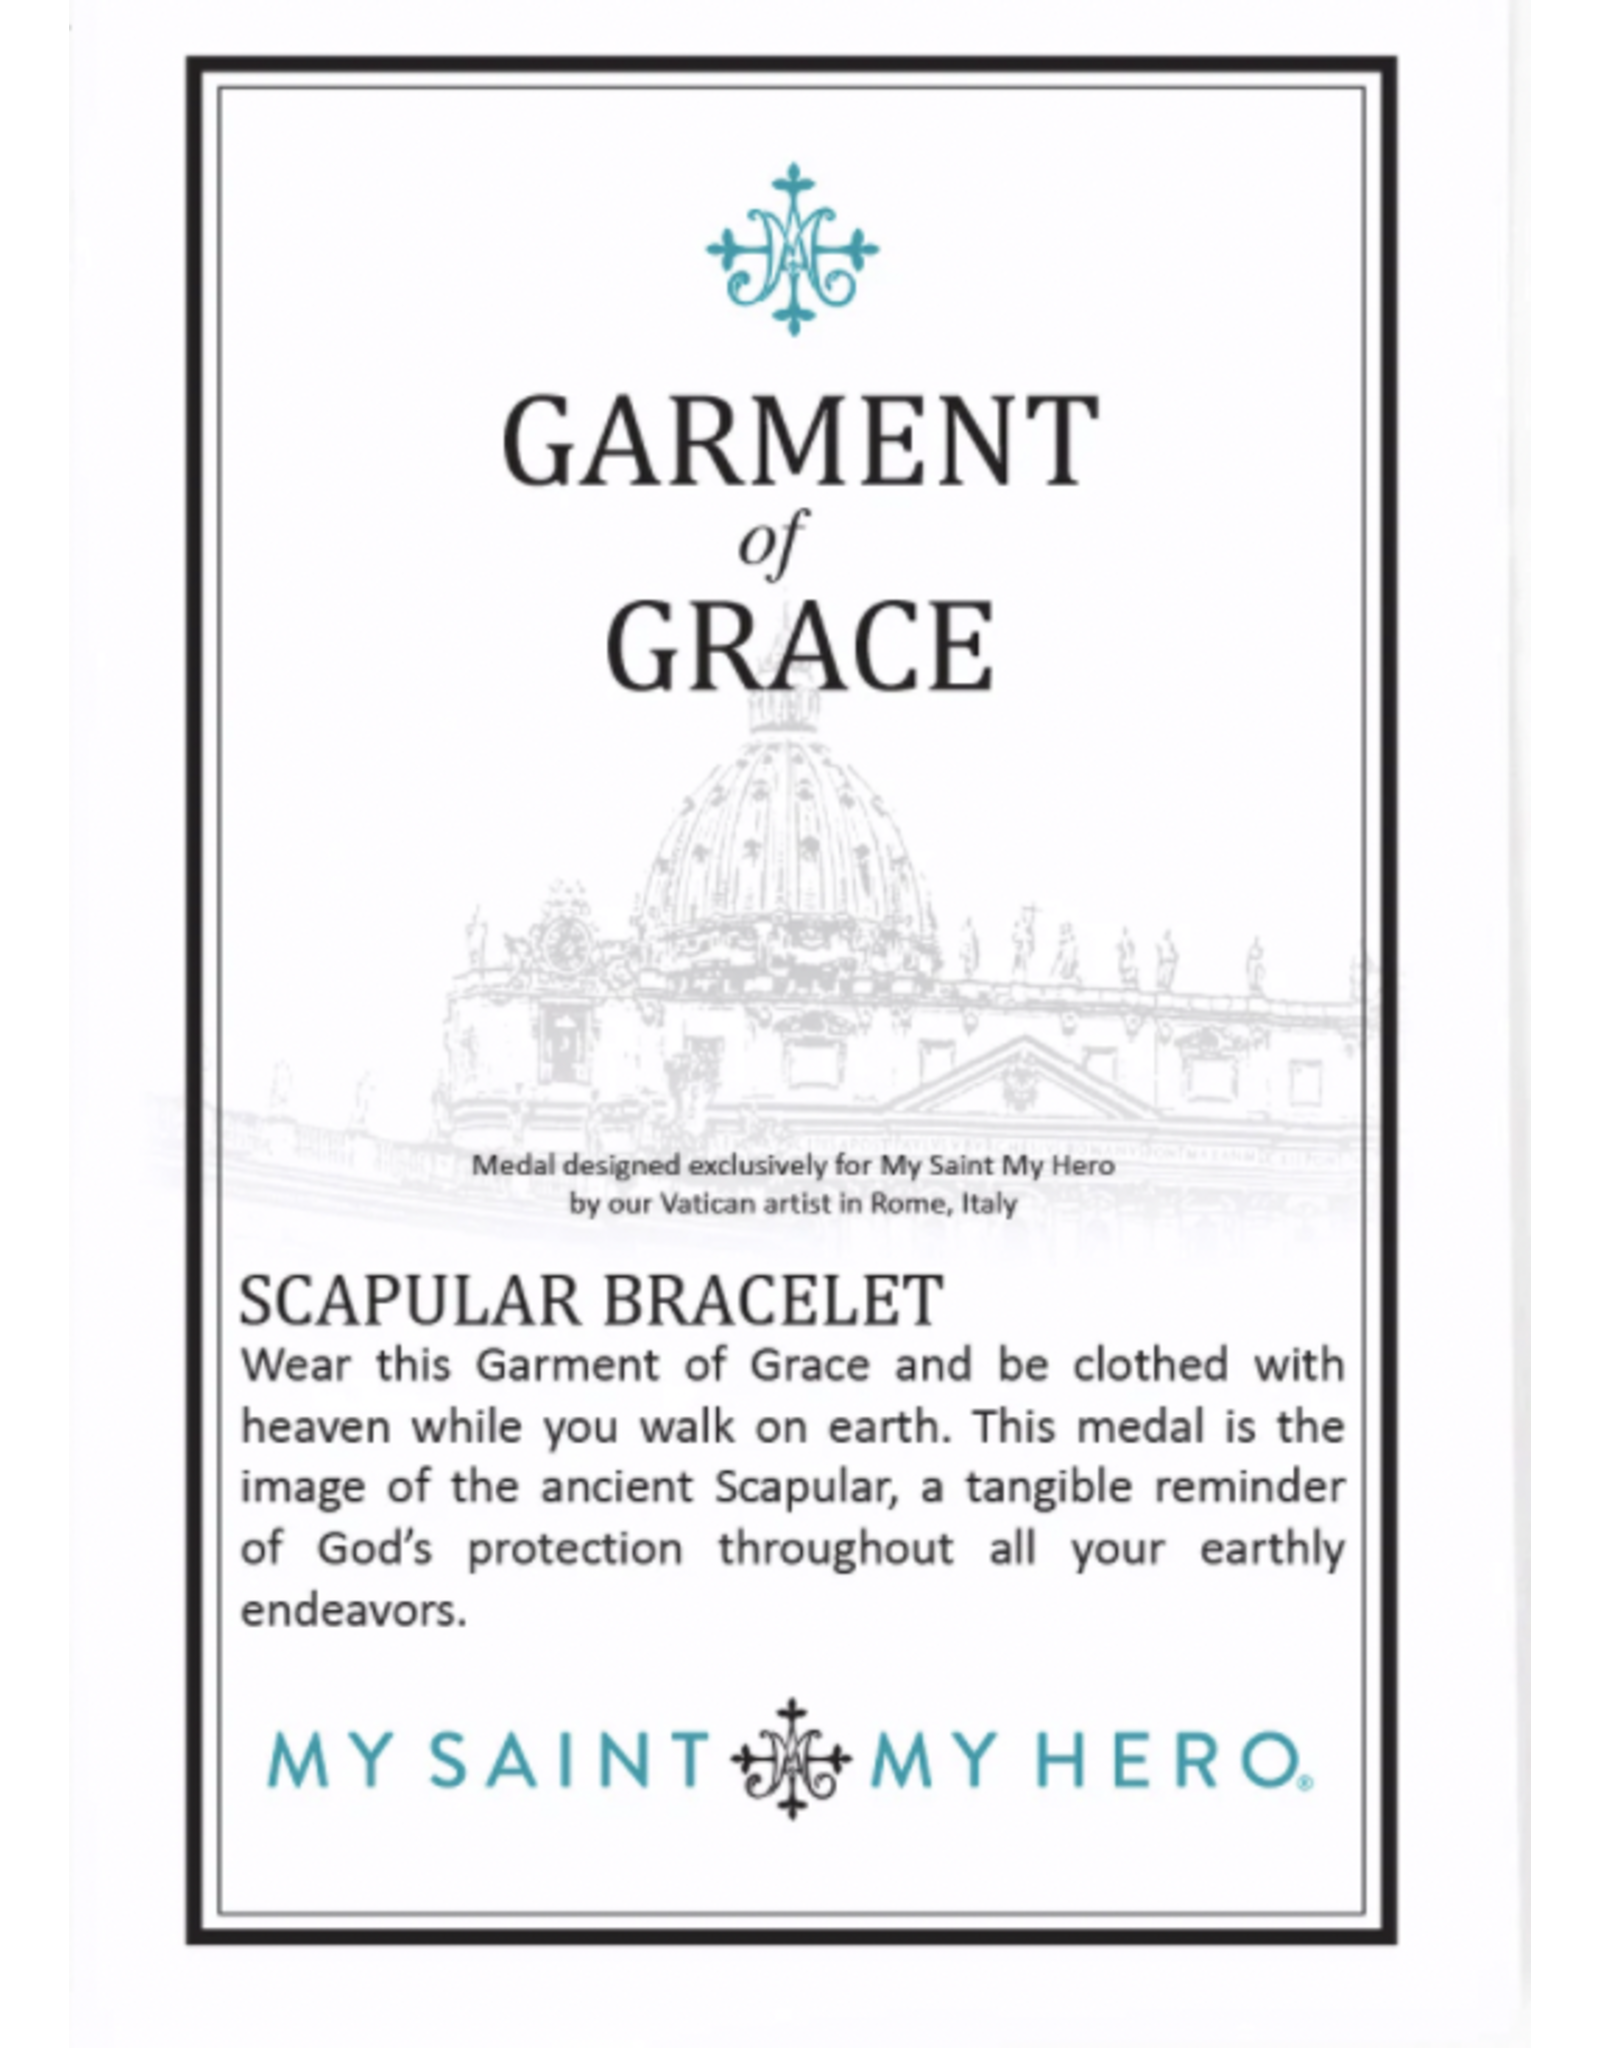 Scapular Bracelet - Garment of Grace